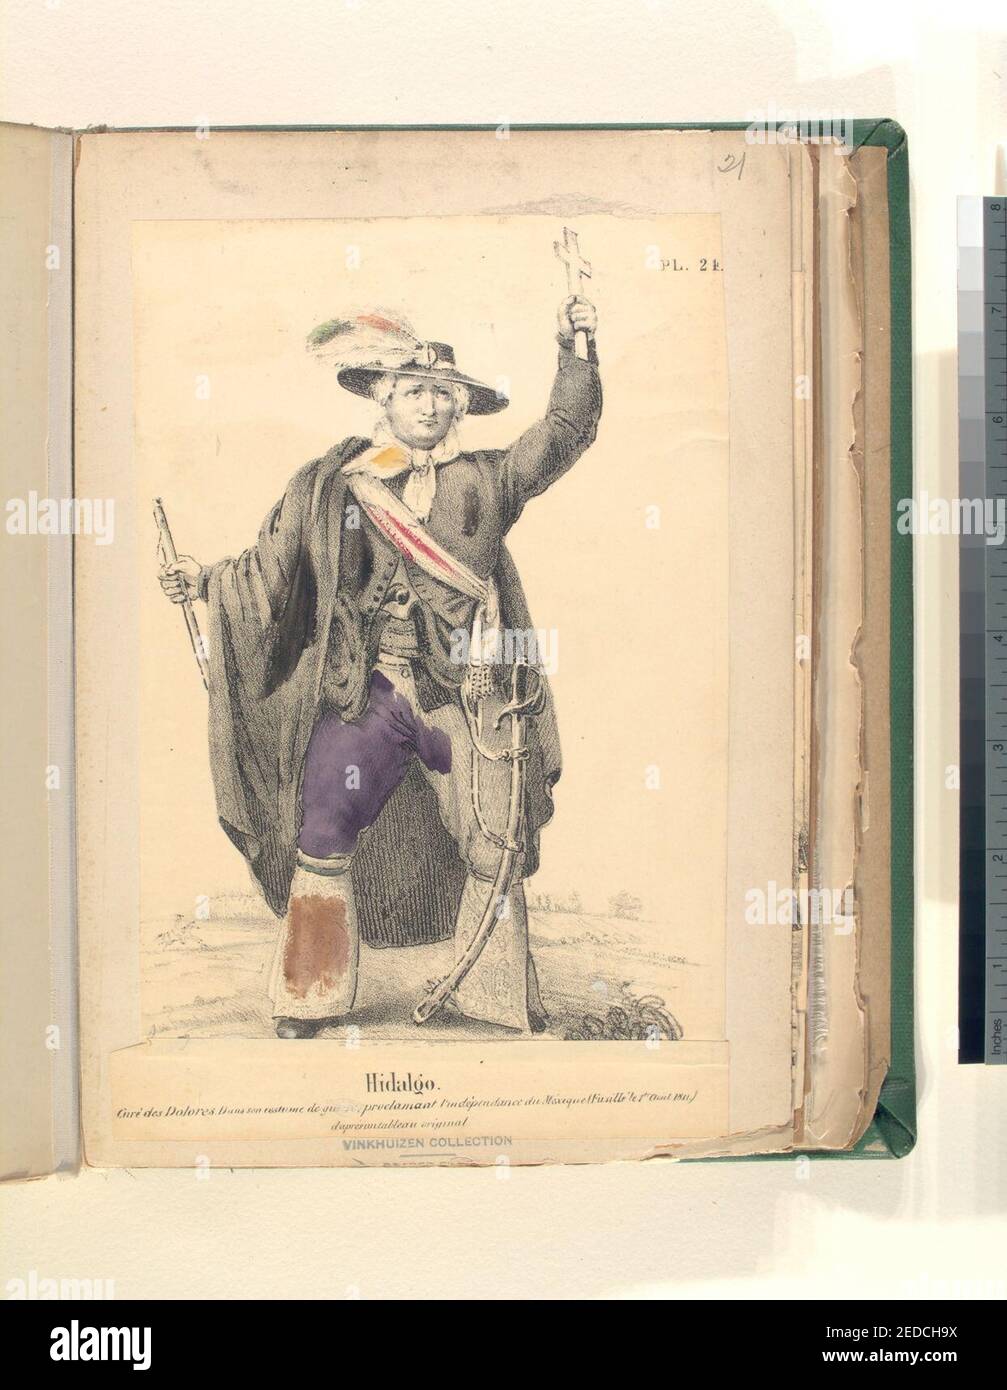 Hidalgo. Curé des Dolores dans son costume de guerre, proclammant l'independénce du Mexique (fusille le 1er août, 1811) d'après un tableau original) Stock Photo